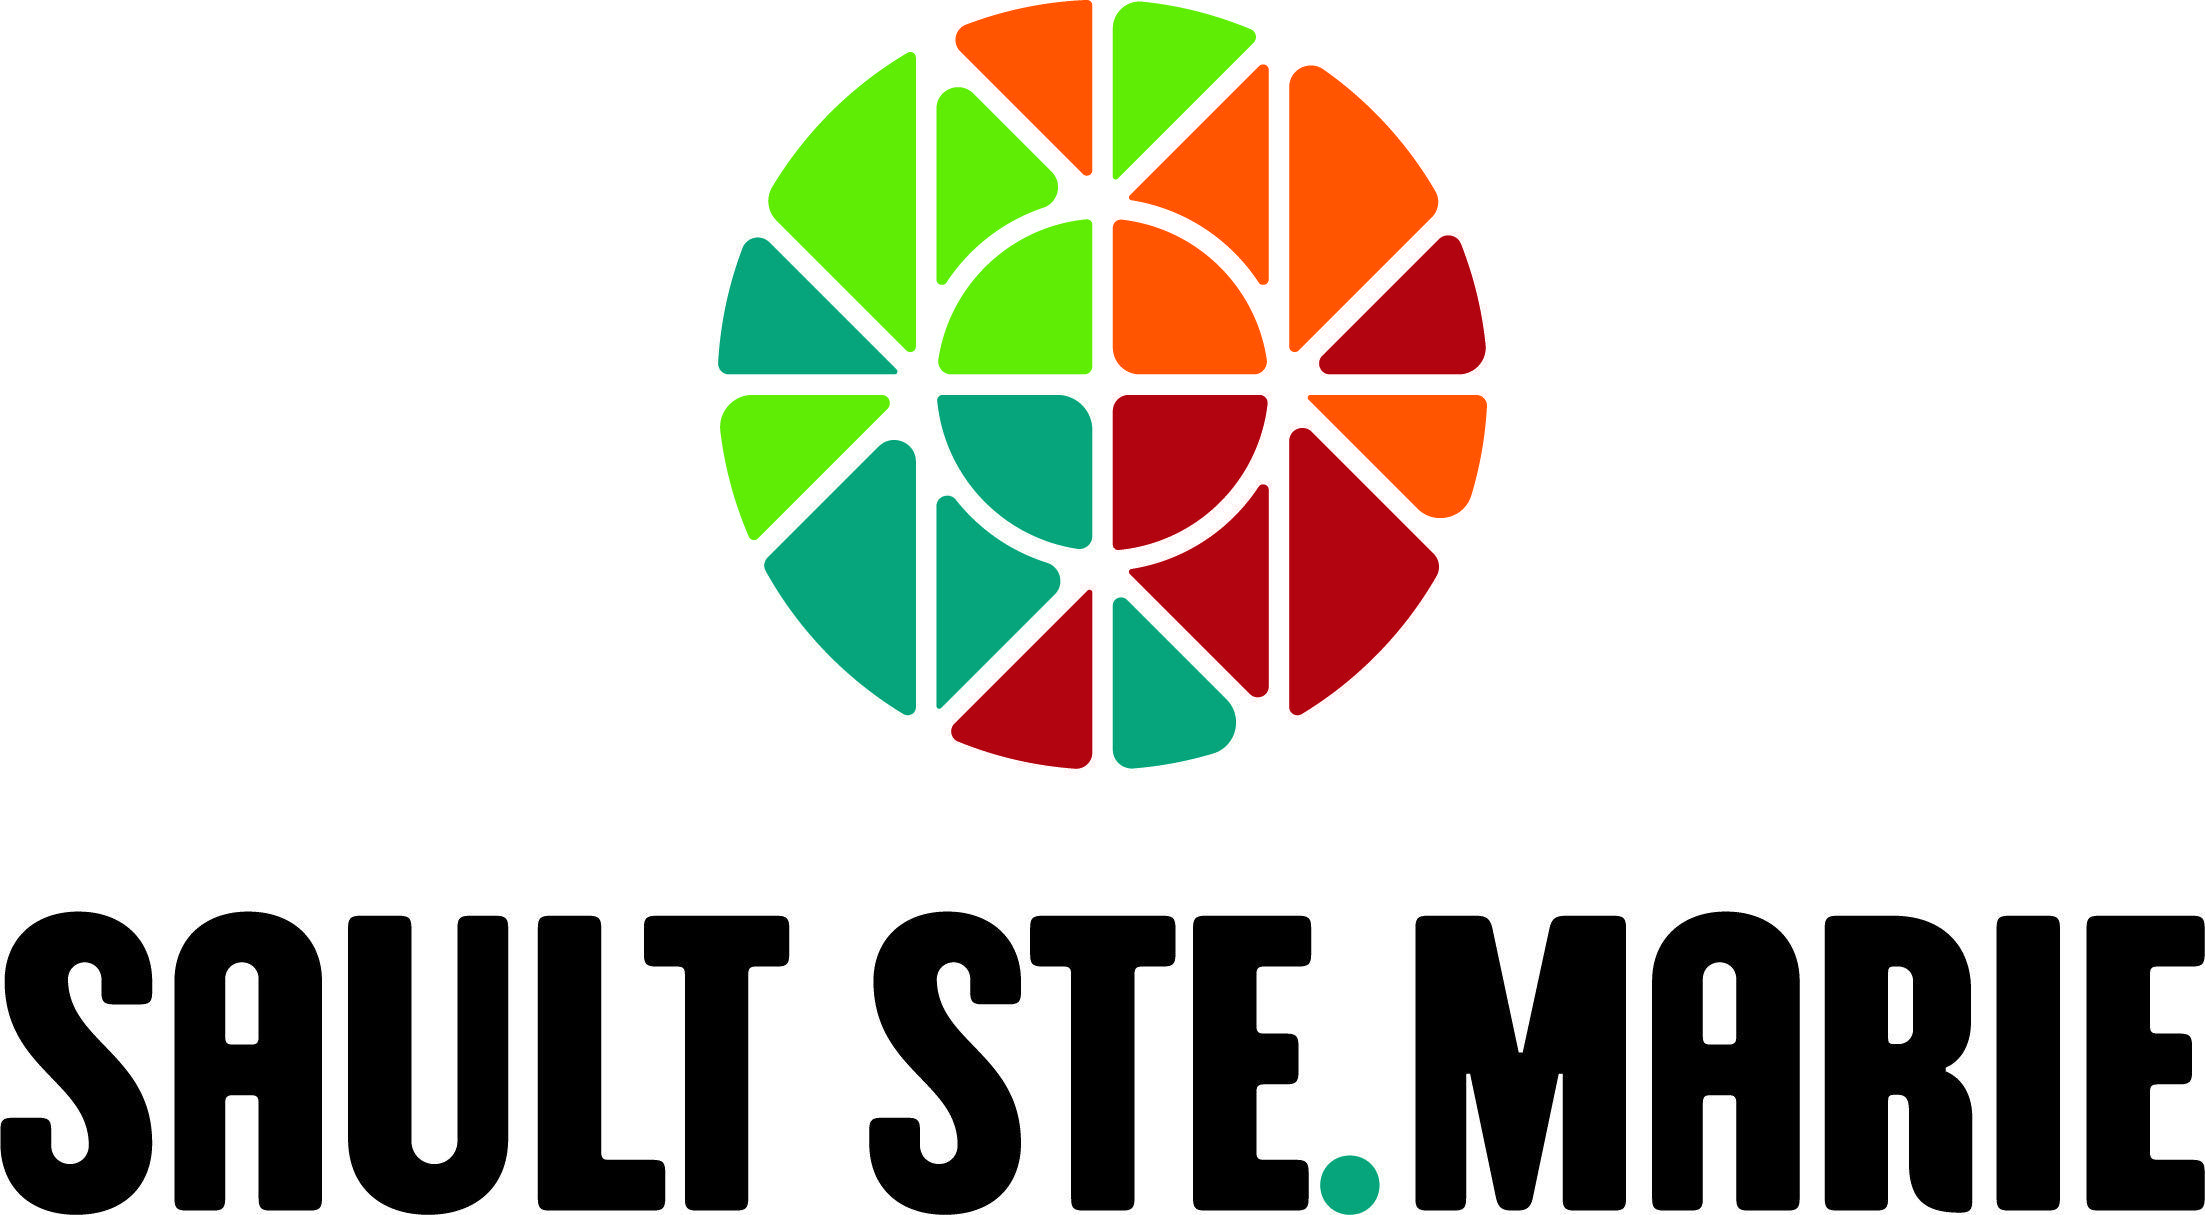 Ste Logo - City unveils new logo, branding strategy - SooToday.com